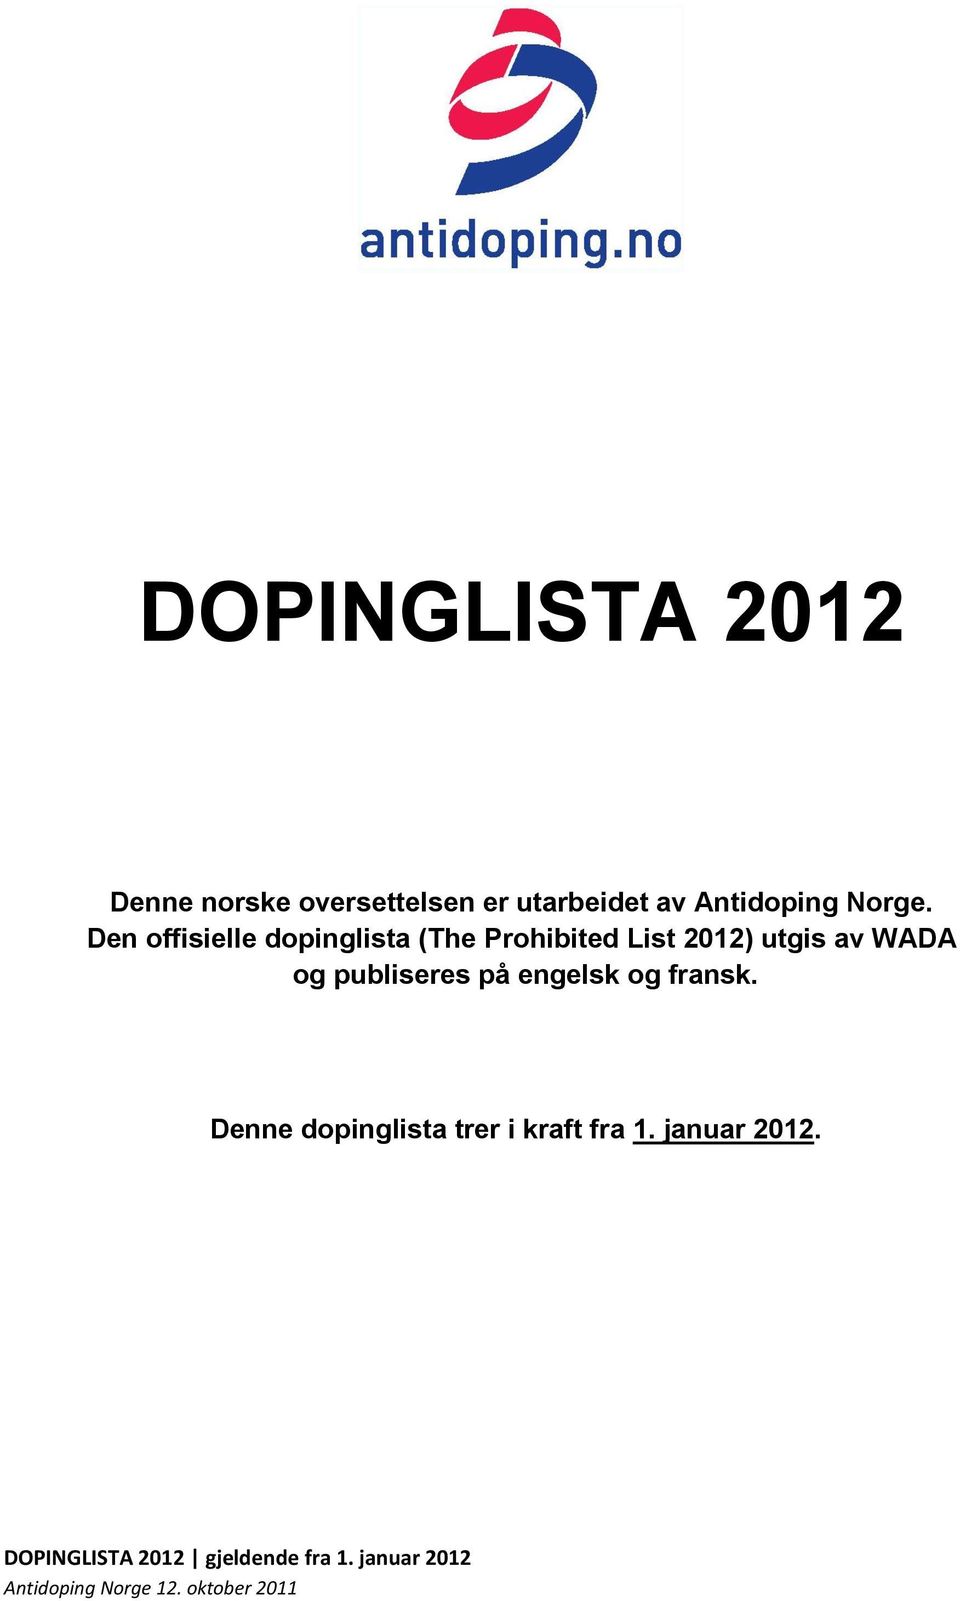 Den offisielle dopinglista (The Prohibited List 2012)